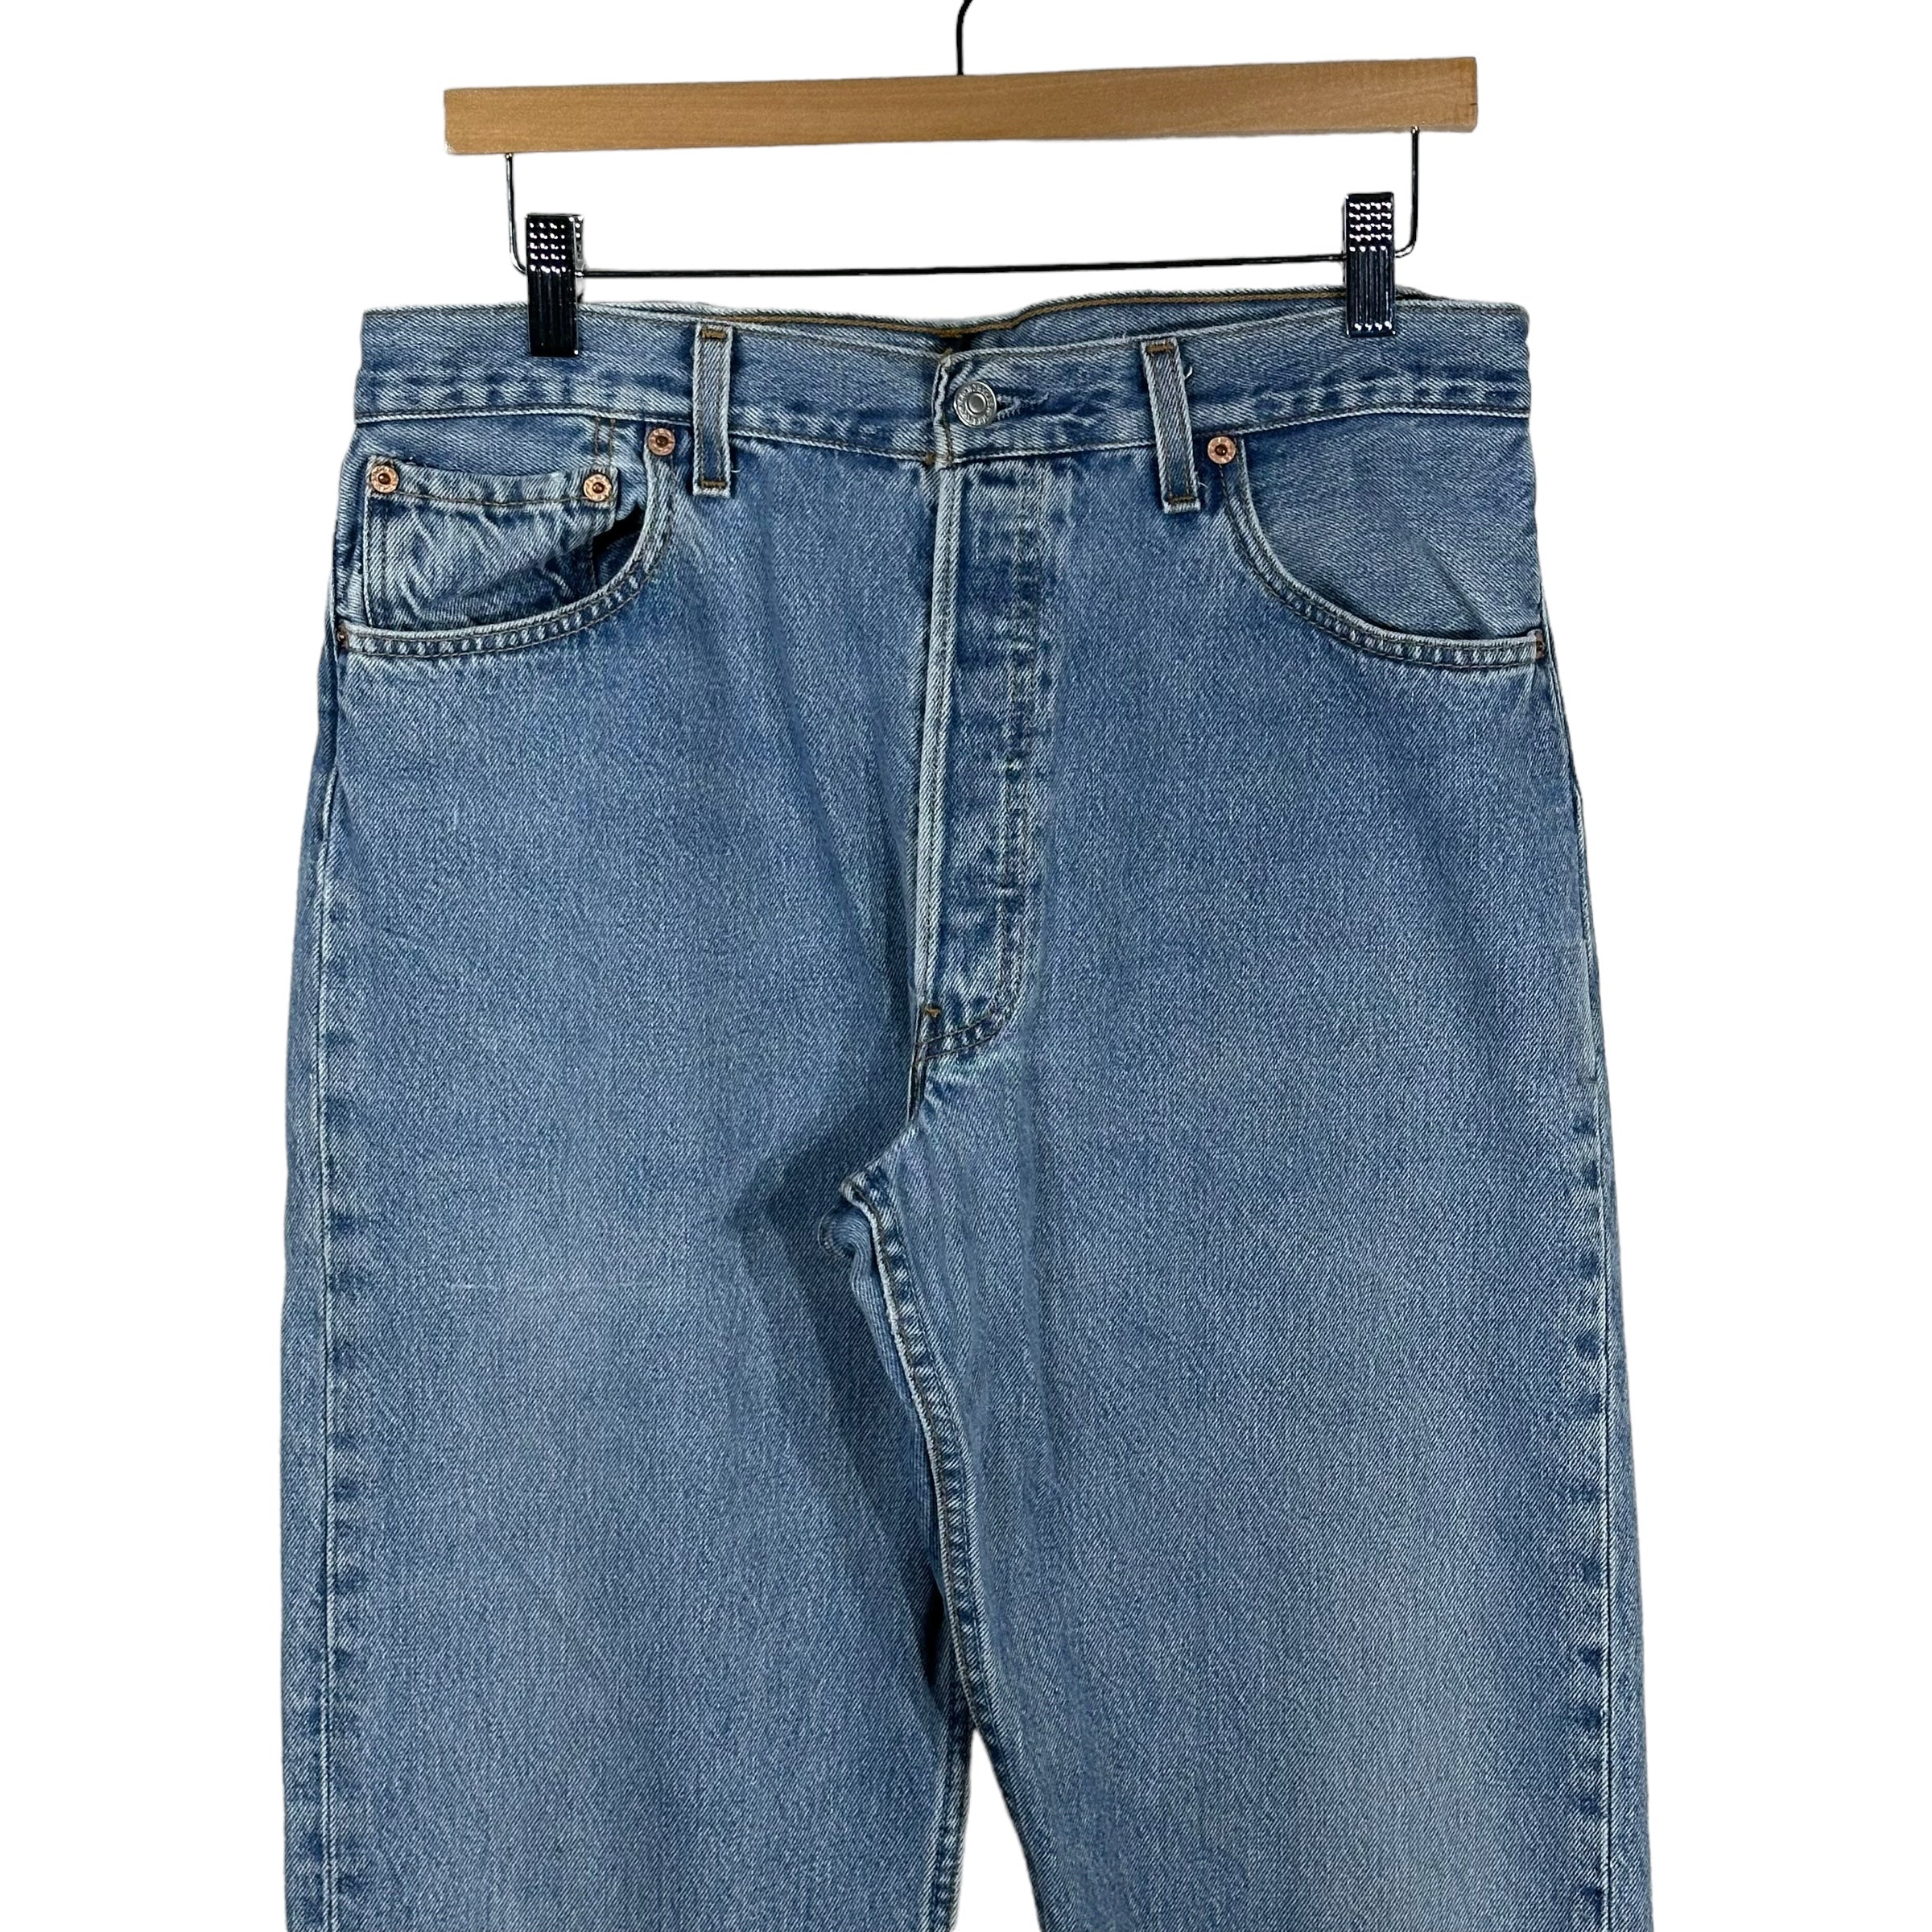 Vintage Levis 501 Denim Pants